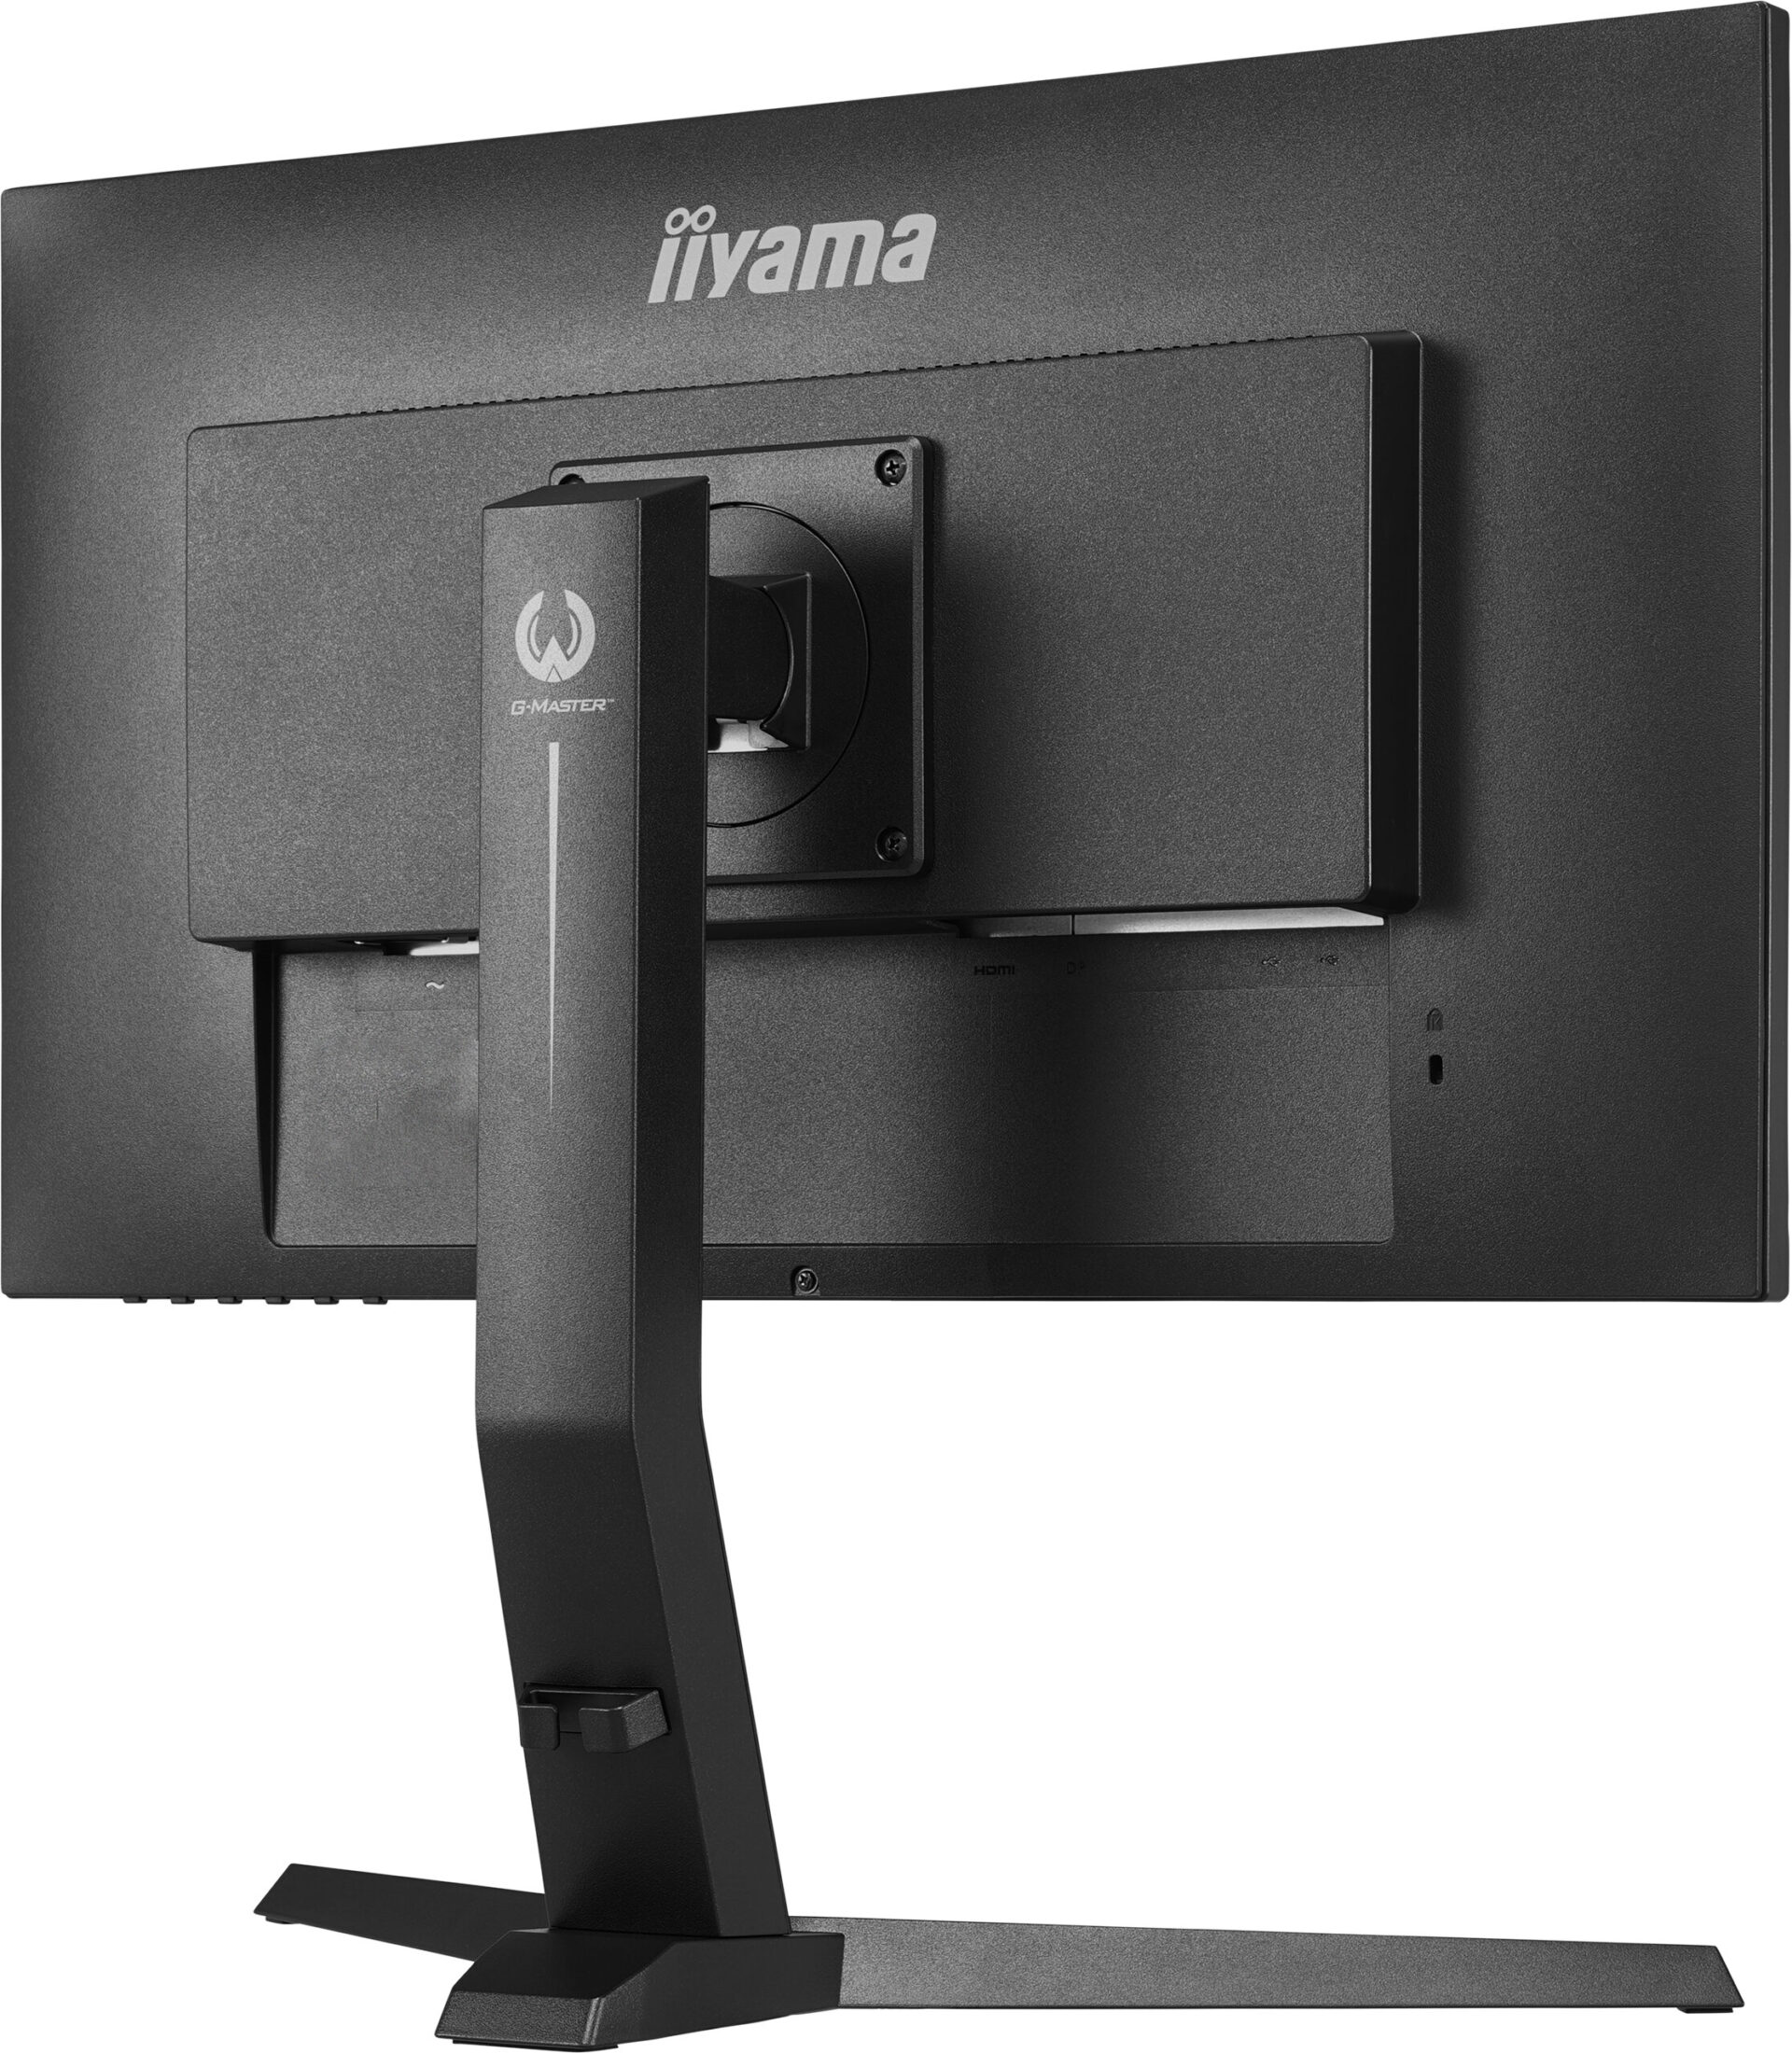 iiyama prezentuje G-Master GB2790QSU-B1 Gold Phoenix - idealne połączenie szybkości i wysokiej jakości obrazu 2